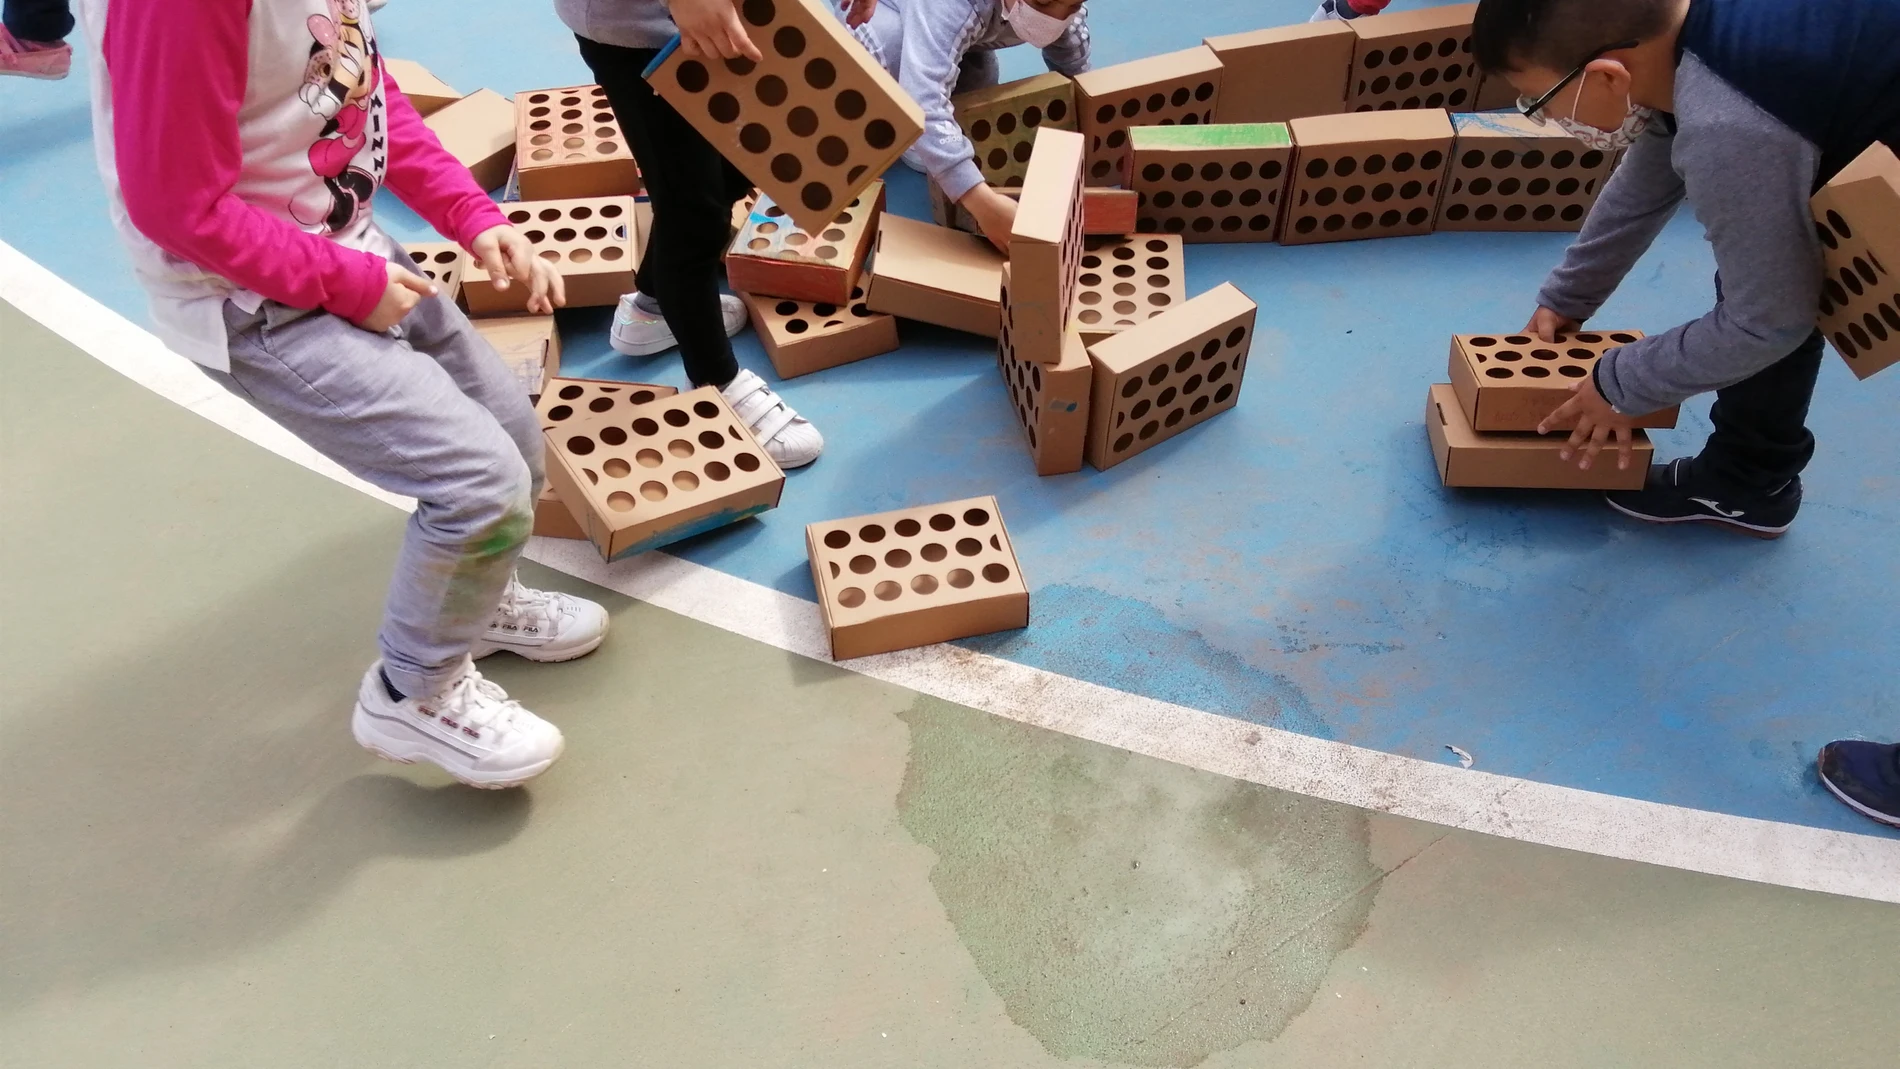 Niños valencianos plantan una falla de 2.000 ladrillos, uno por cada milímetro de distancia social